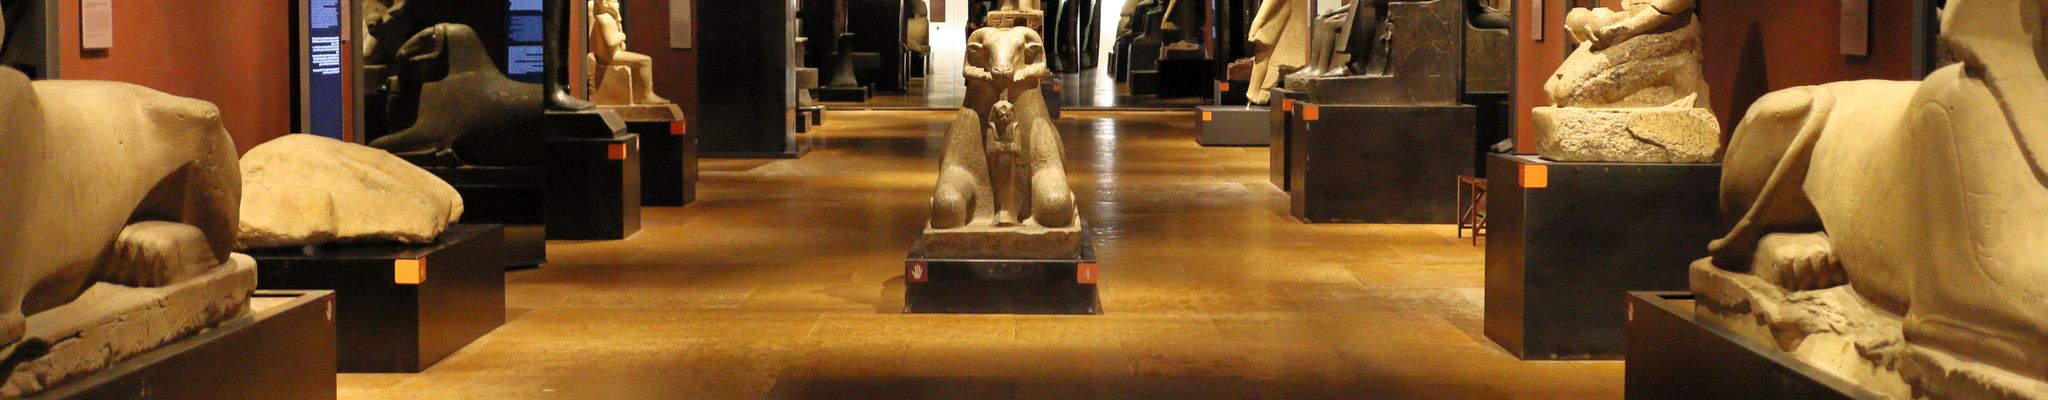 Egyptisch Museum